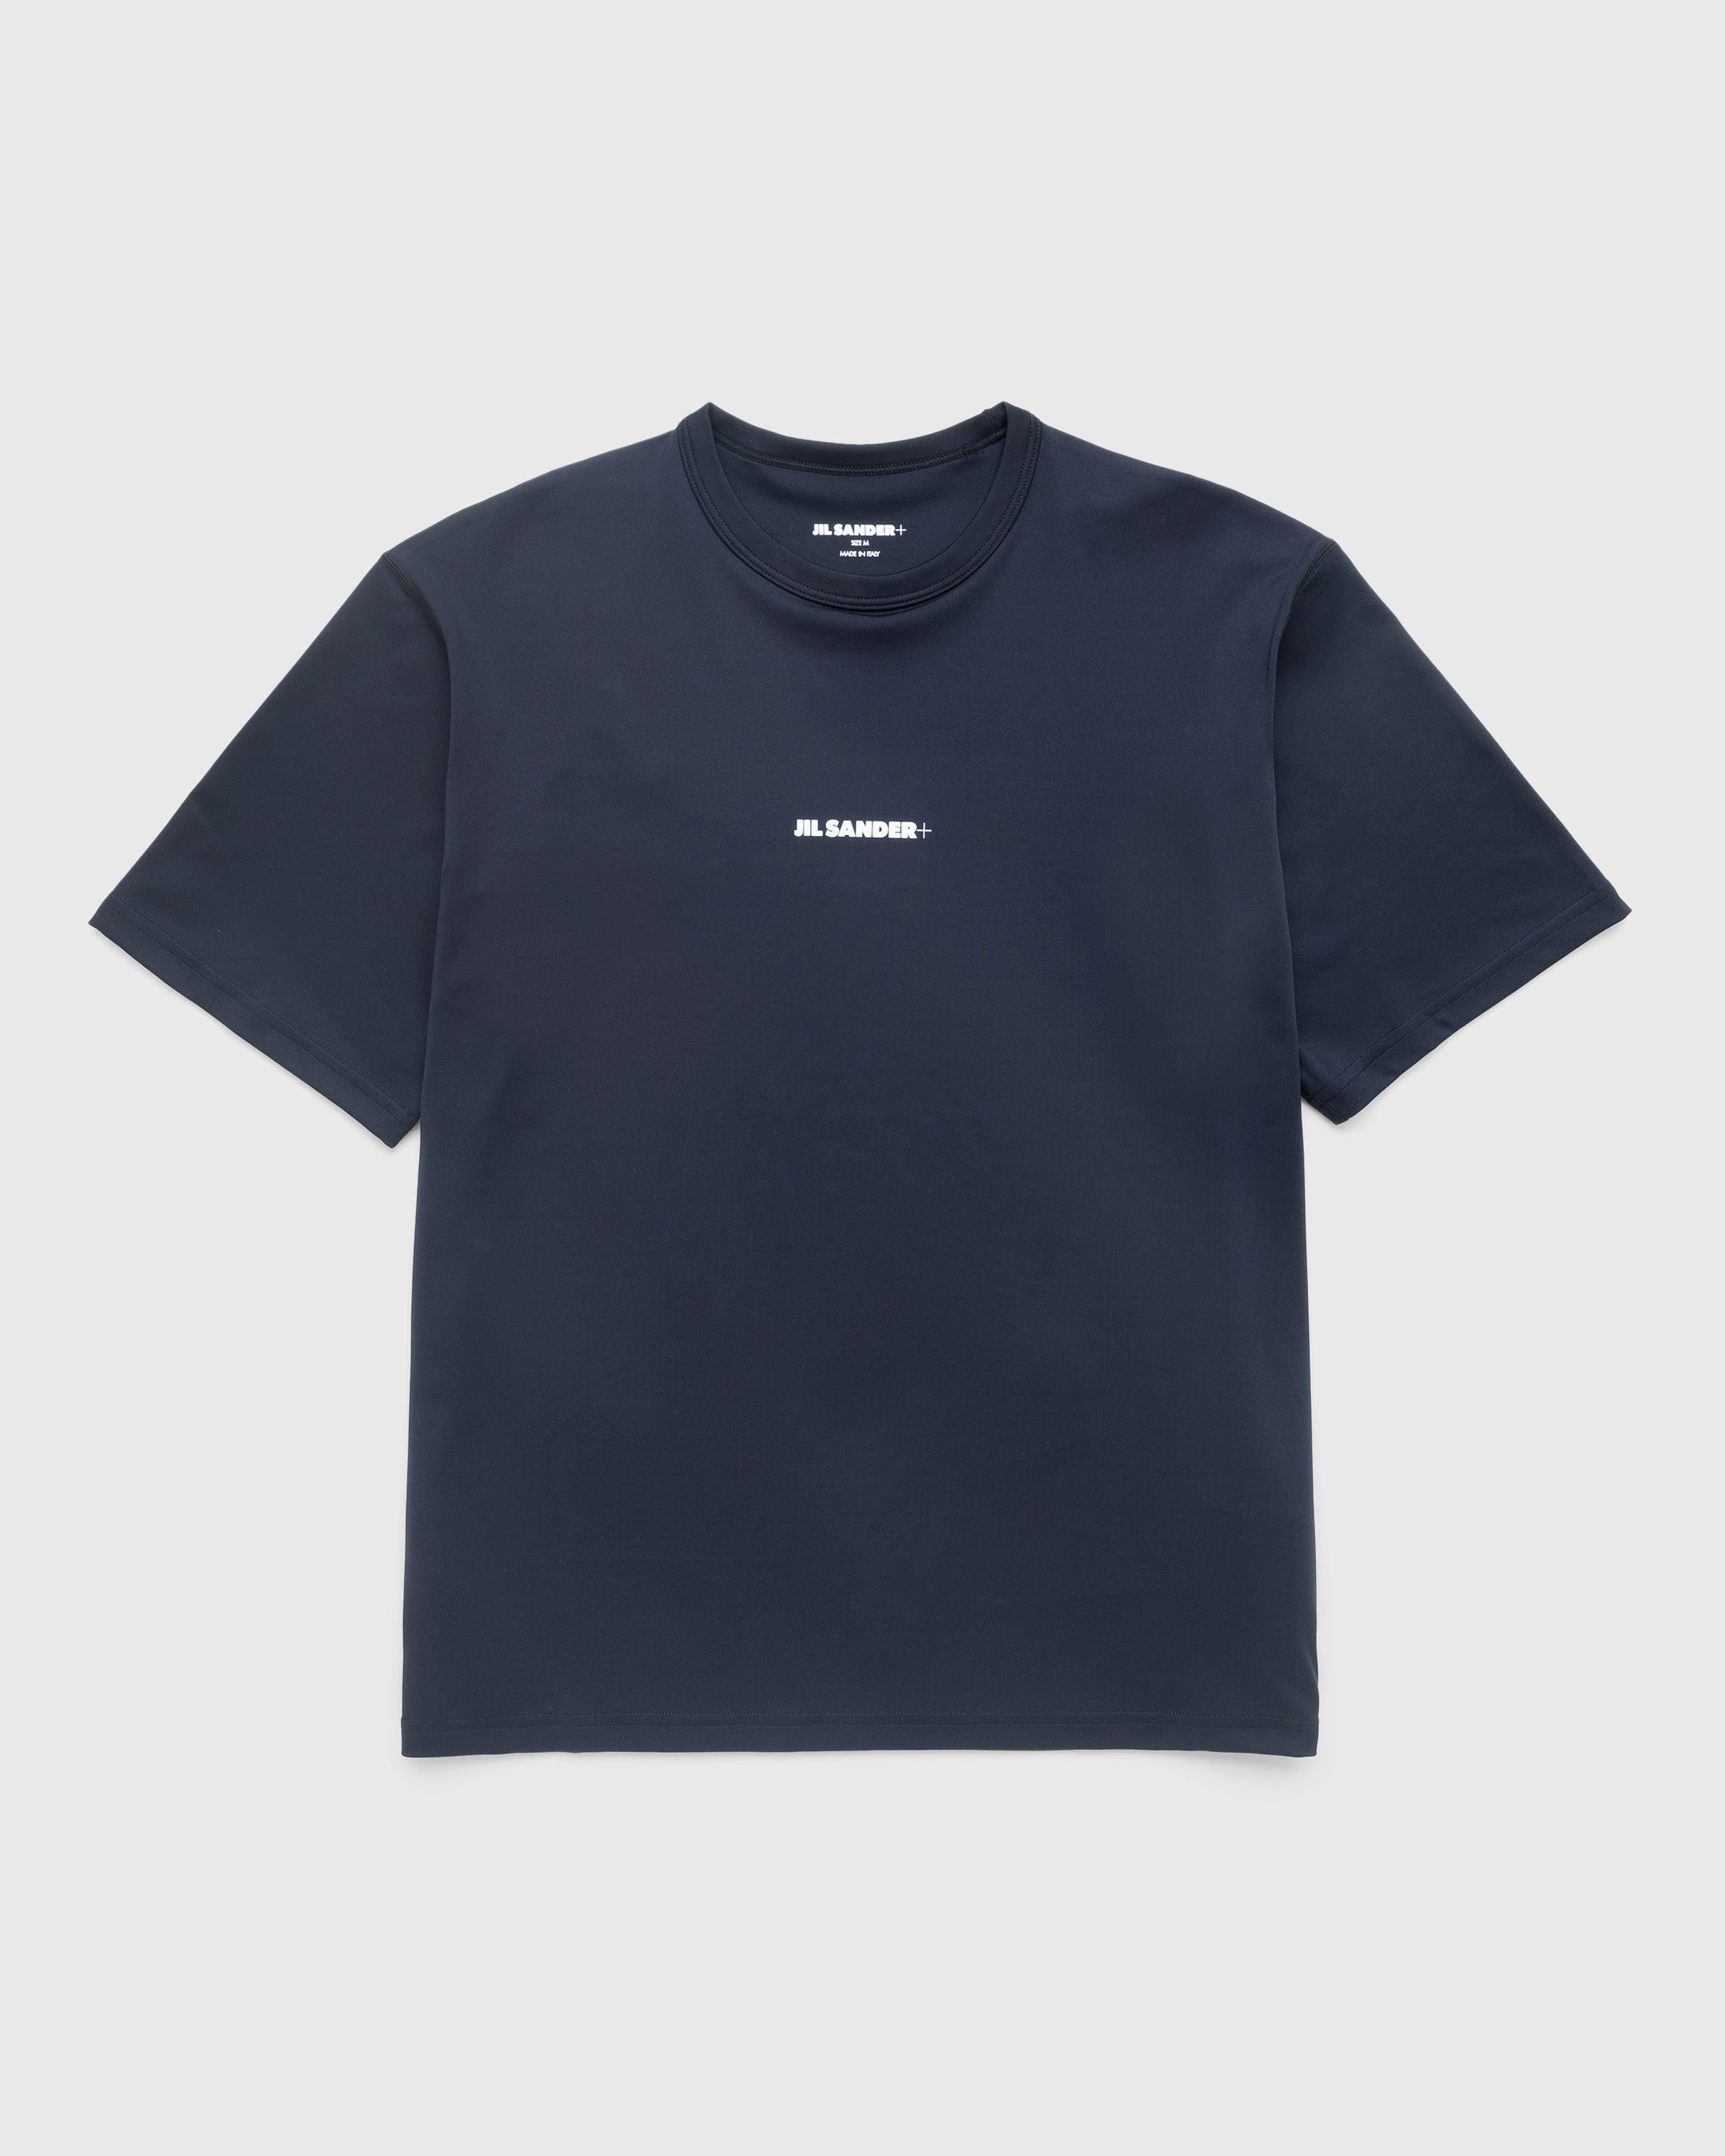 Jil Sander – Logo T-Shirt Black | Highsnobiety Shop